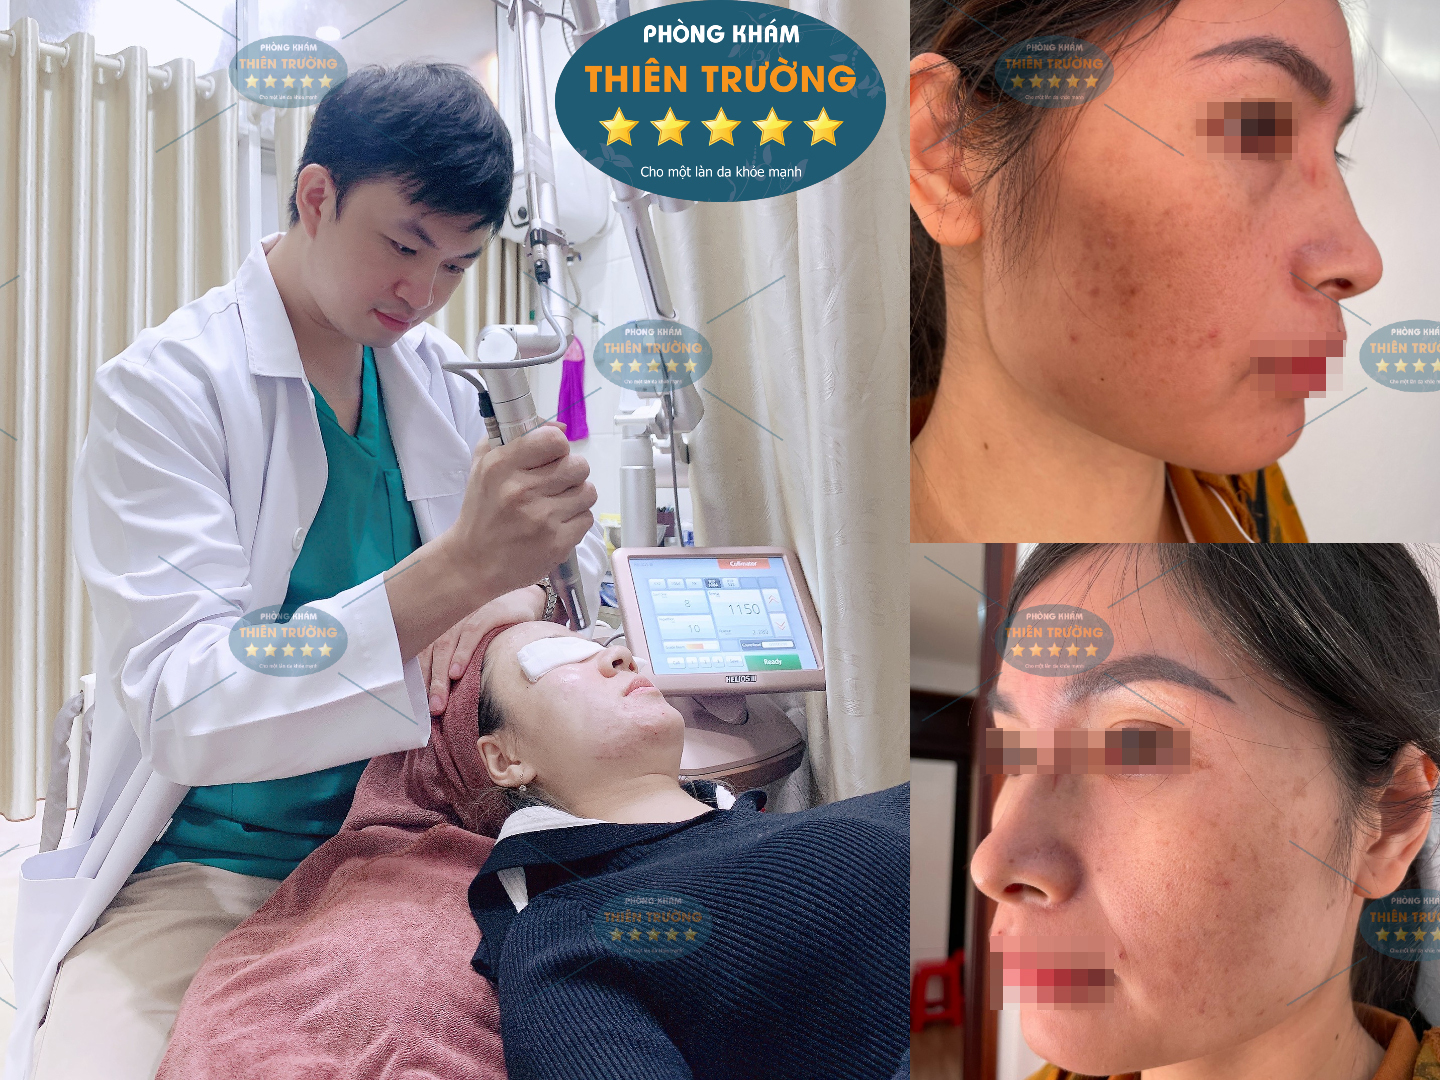 Hình ảnh: Thạc sĩ- Bác sĩ Nguyễn Văn Hoàn đang hỗ trợ điều trị nám- tàn nhang cho bệnh nhân.